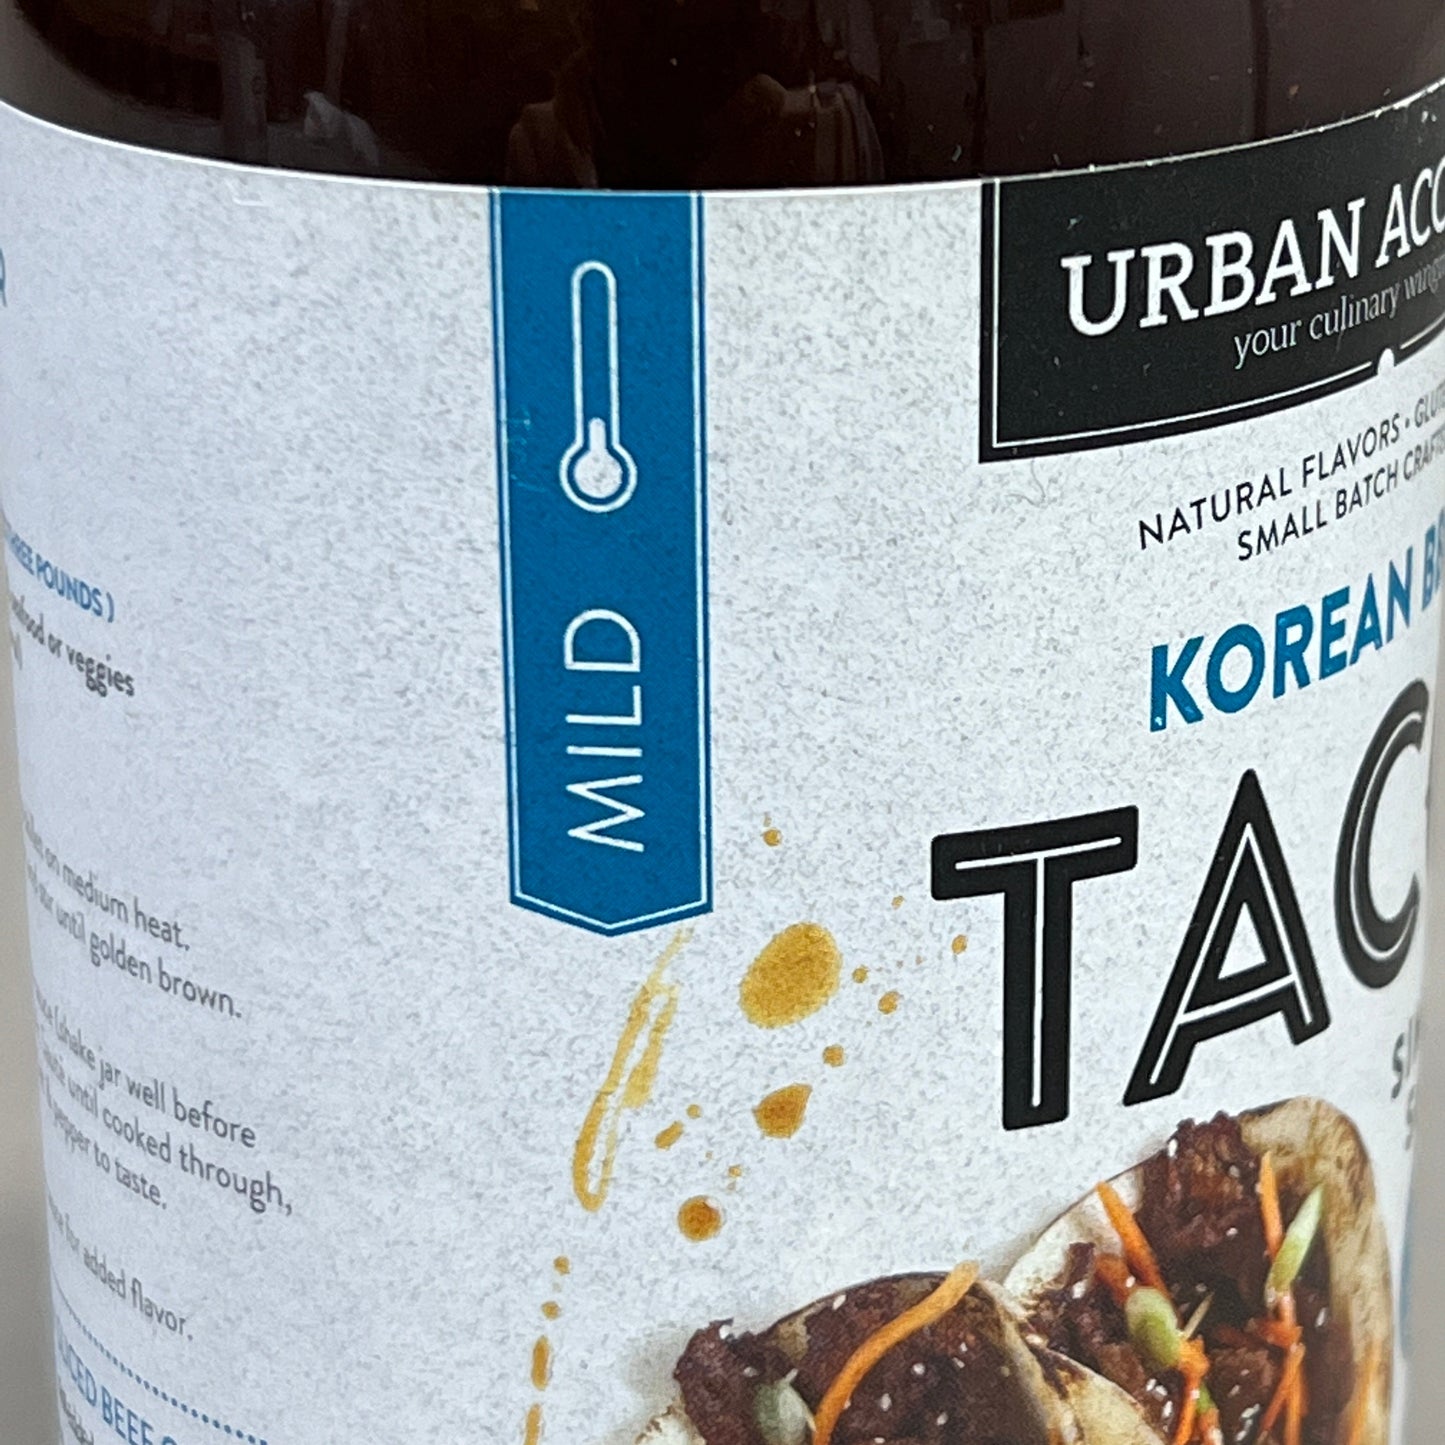 ZA@ URBAN ACCENTS 4-PACK Mild Korean Barbecue Taco Simmer Sauce 14.3 oz GF 02/24 QURA4E31 (New)